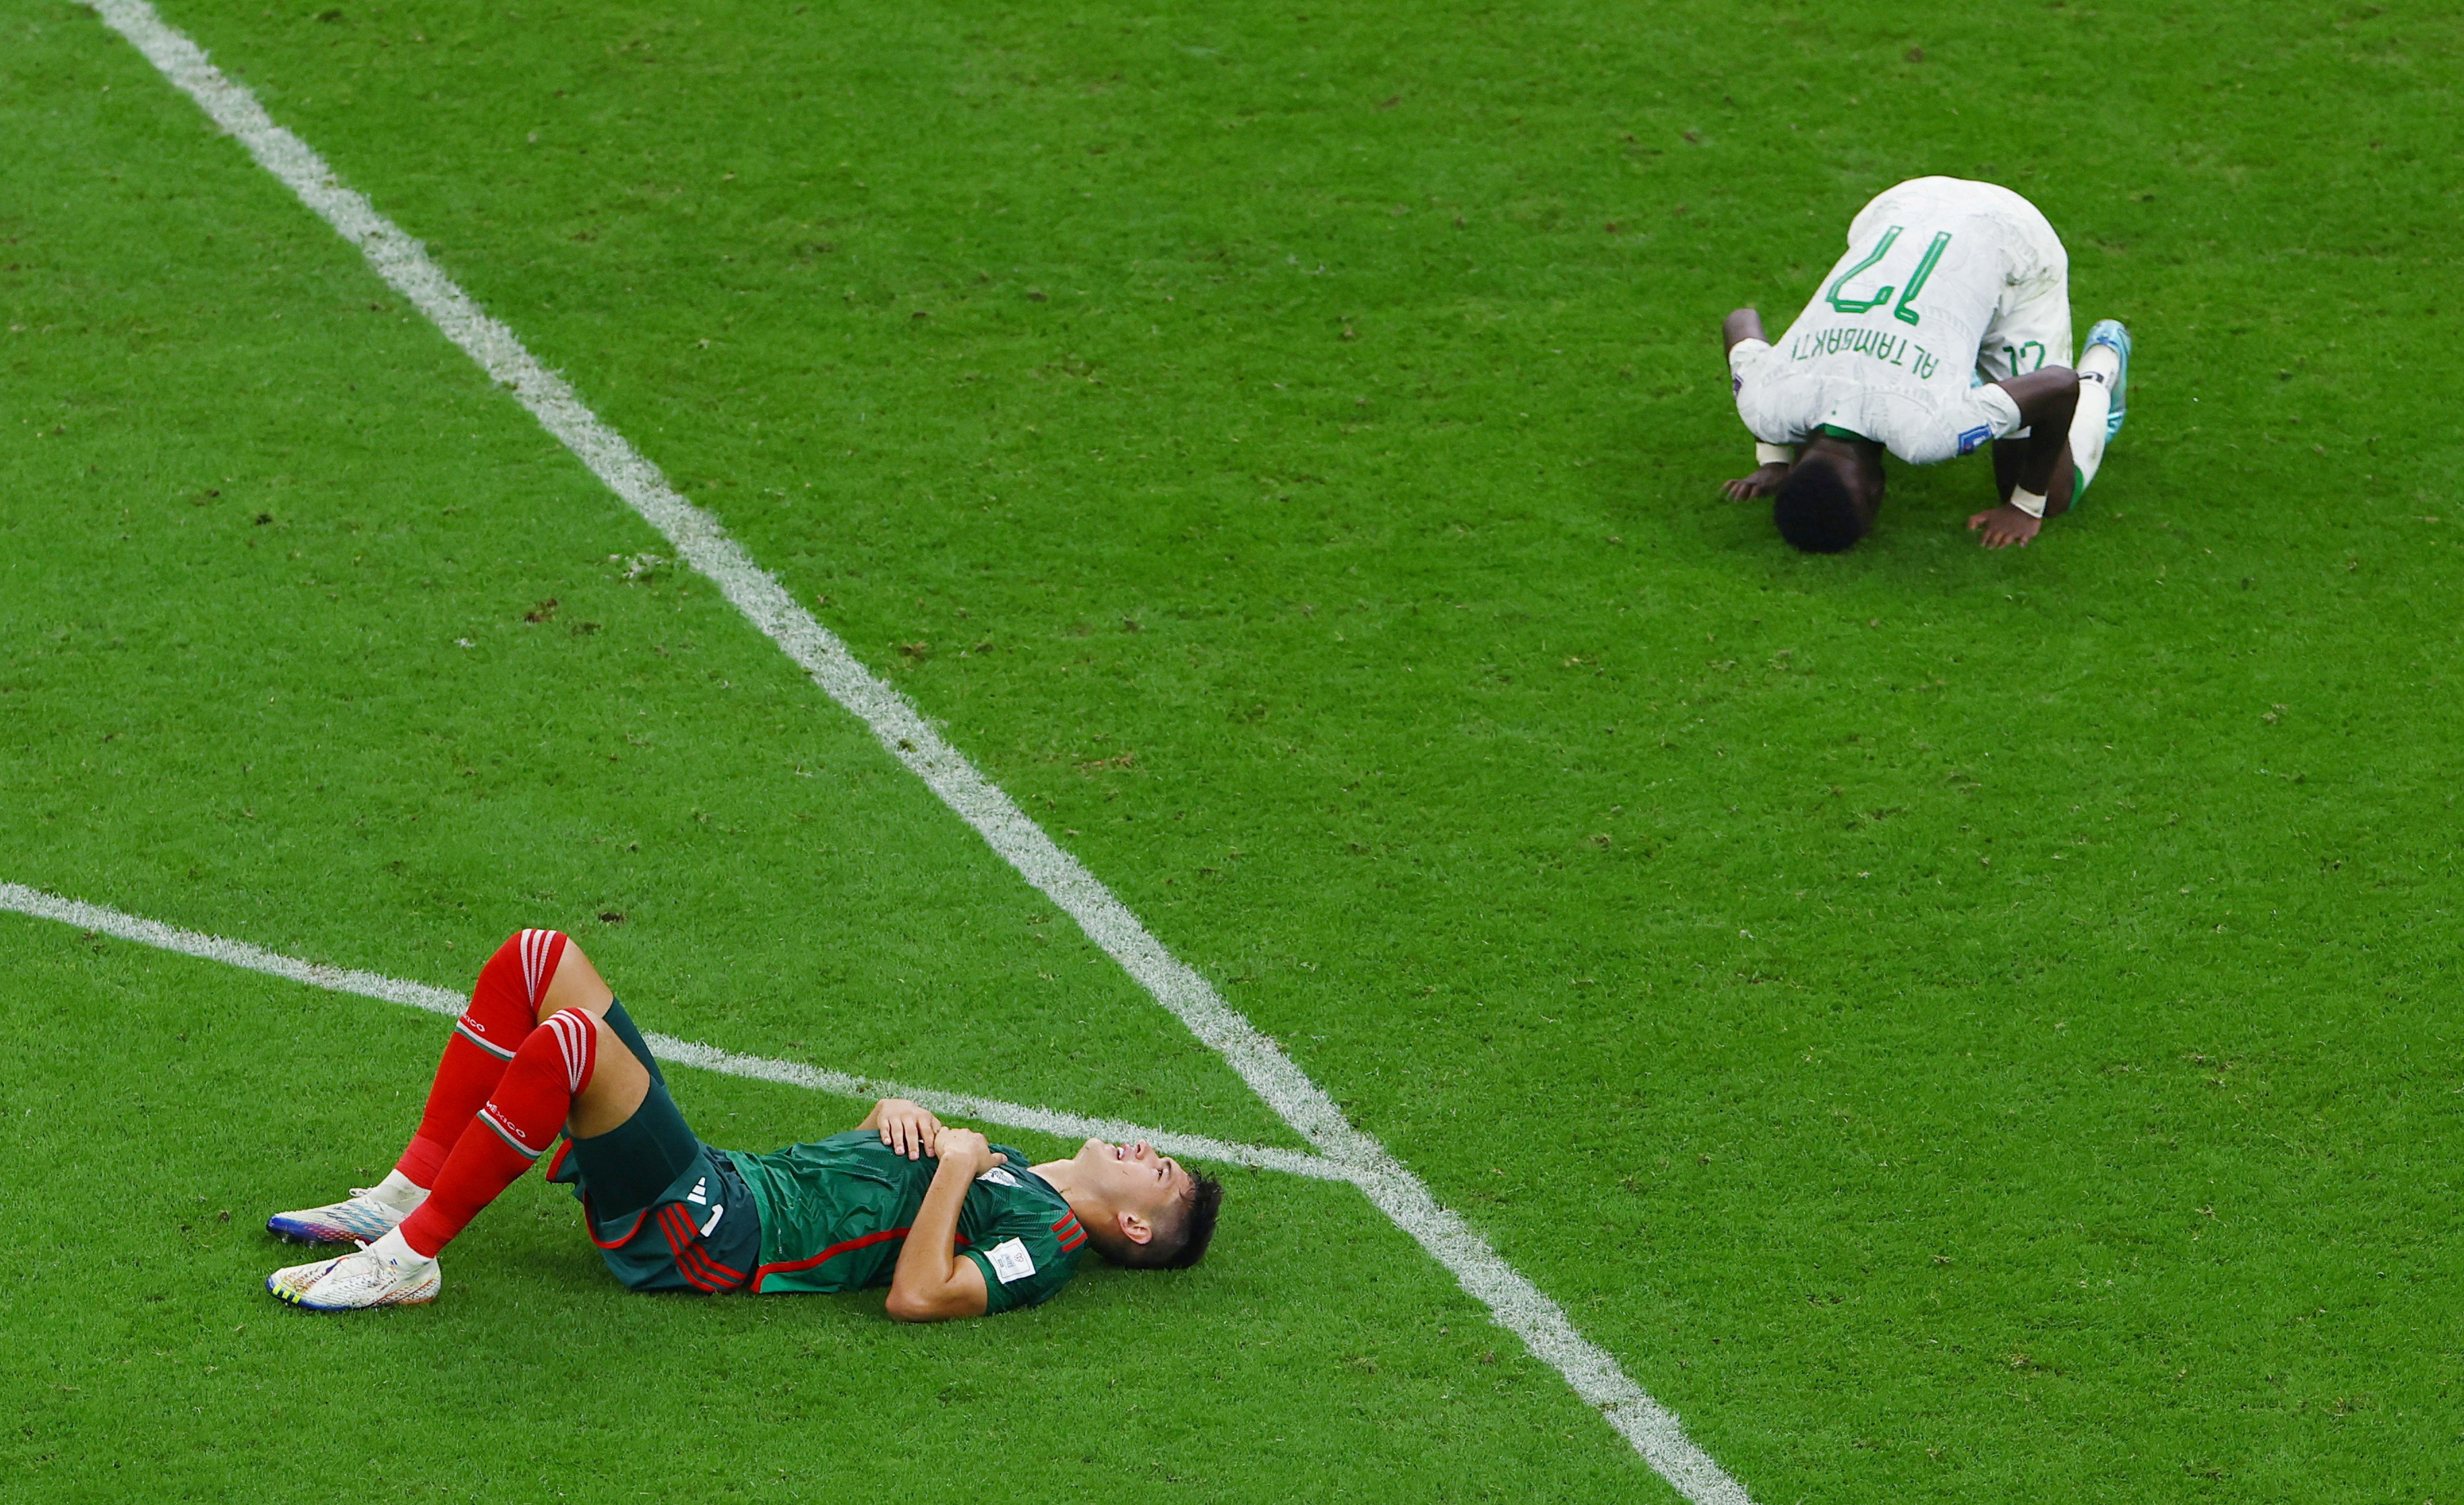 La exhibición de México contra Arabia Saudita no fue suficiente para compensar los resultados previos. (REUTERS/Molly Darlington)